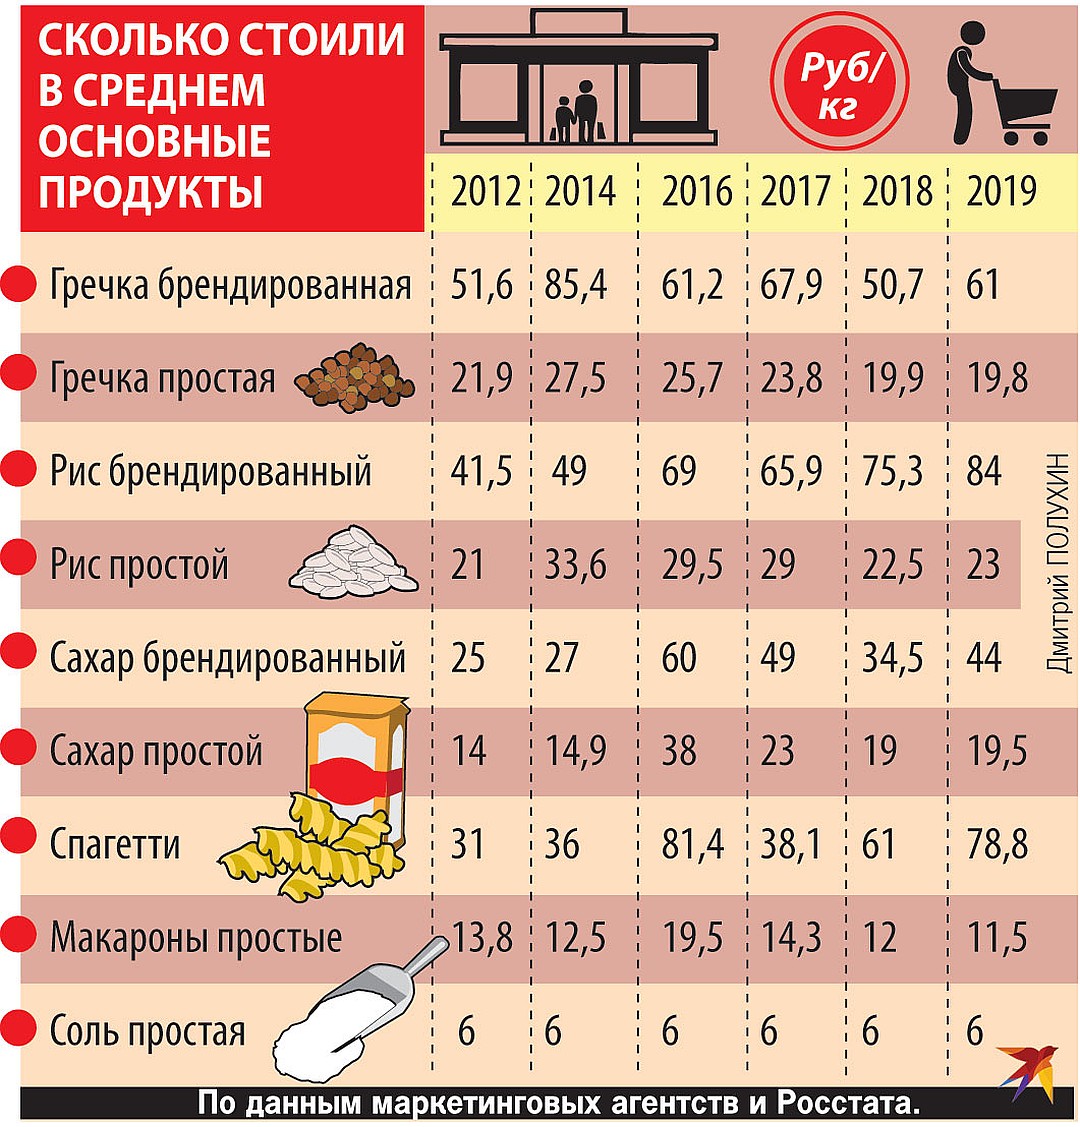 Насколько рано. Основные продукты питания. Цены на основные продукты питания. Сколько стоили продукты в 2012. Цены на продукты в 2012.